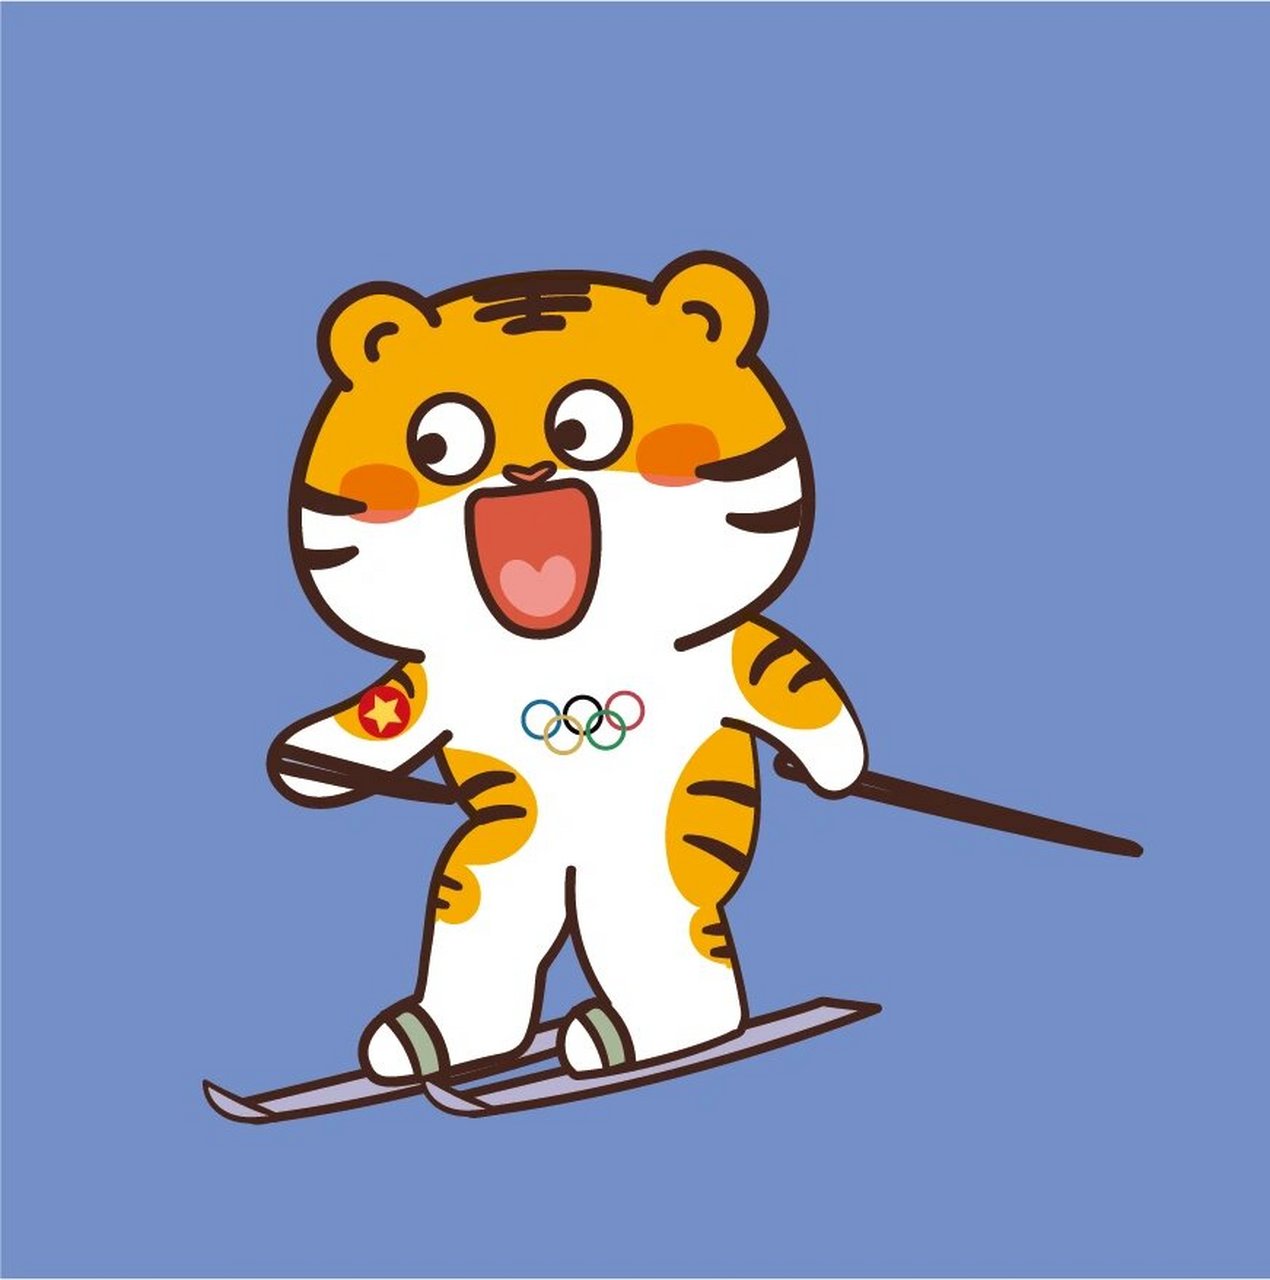 溜冰滑冰冬奥会卡通插画形象设计虎萌萌可爱 谢谢喜欢